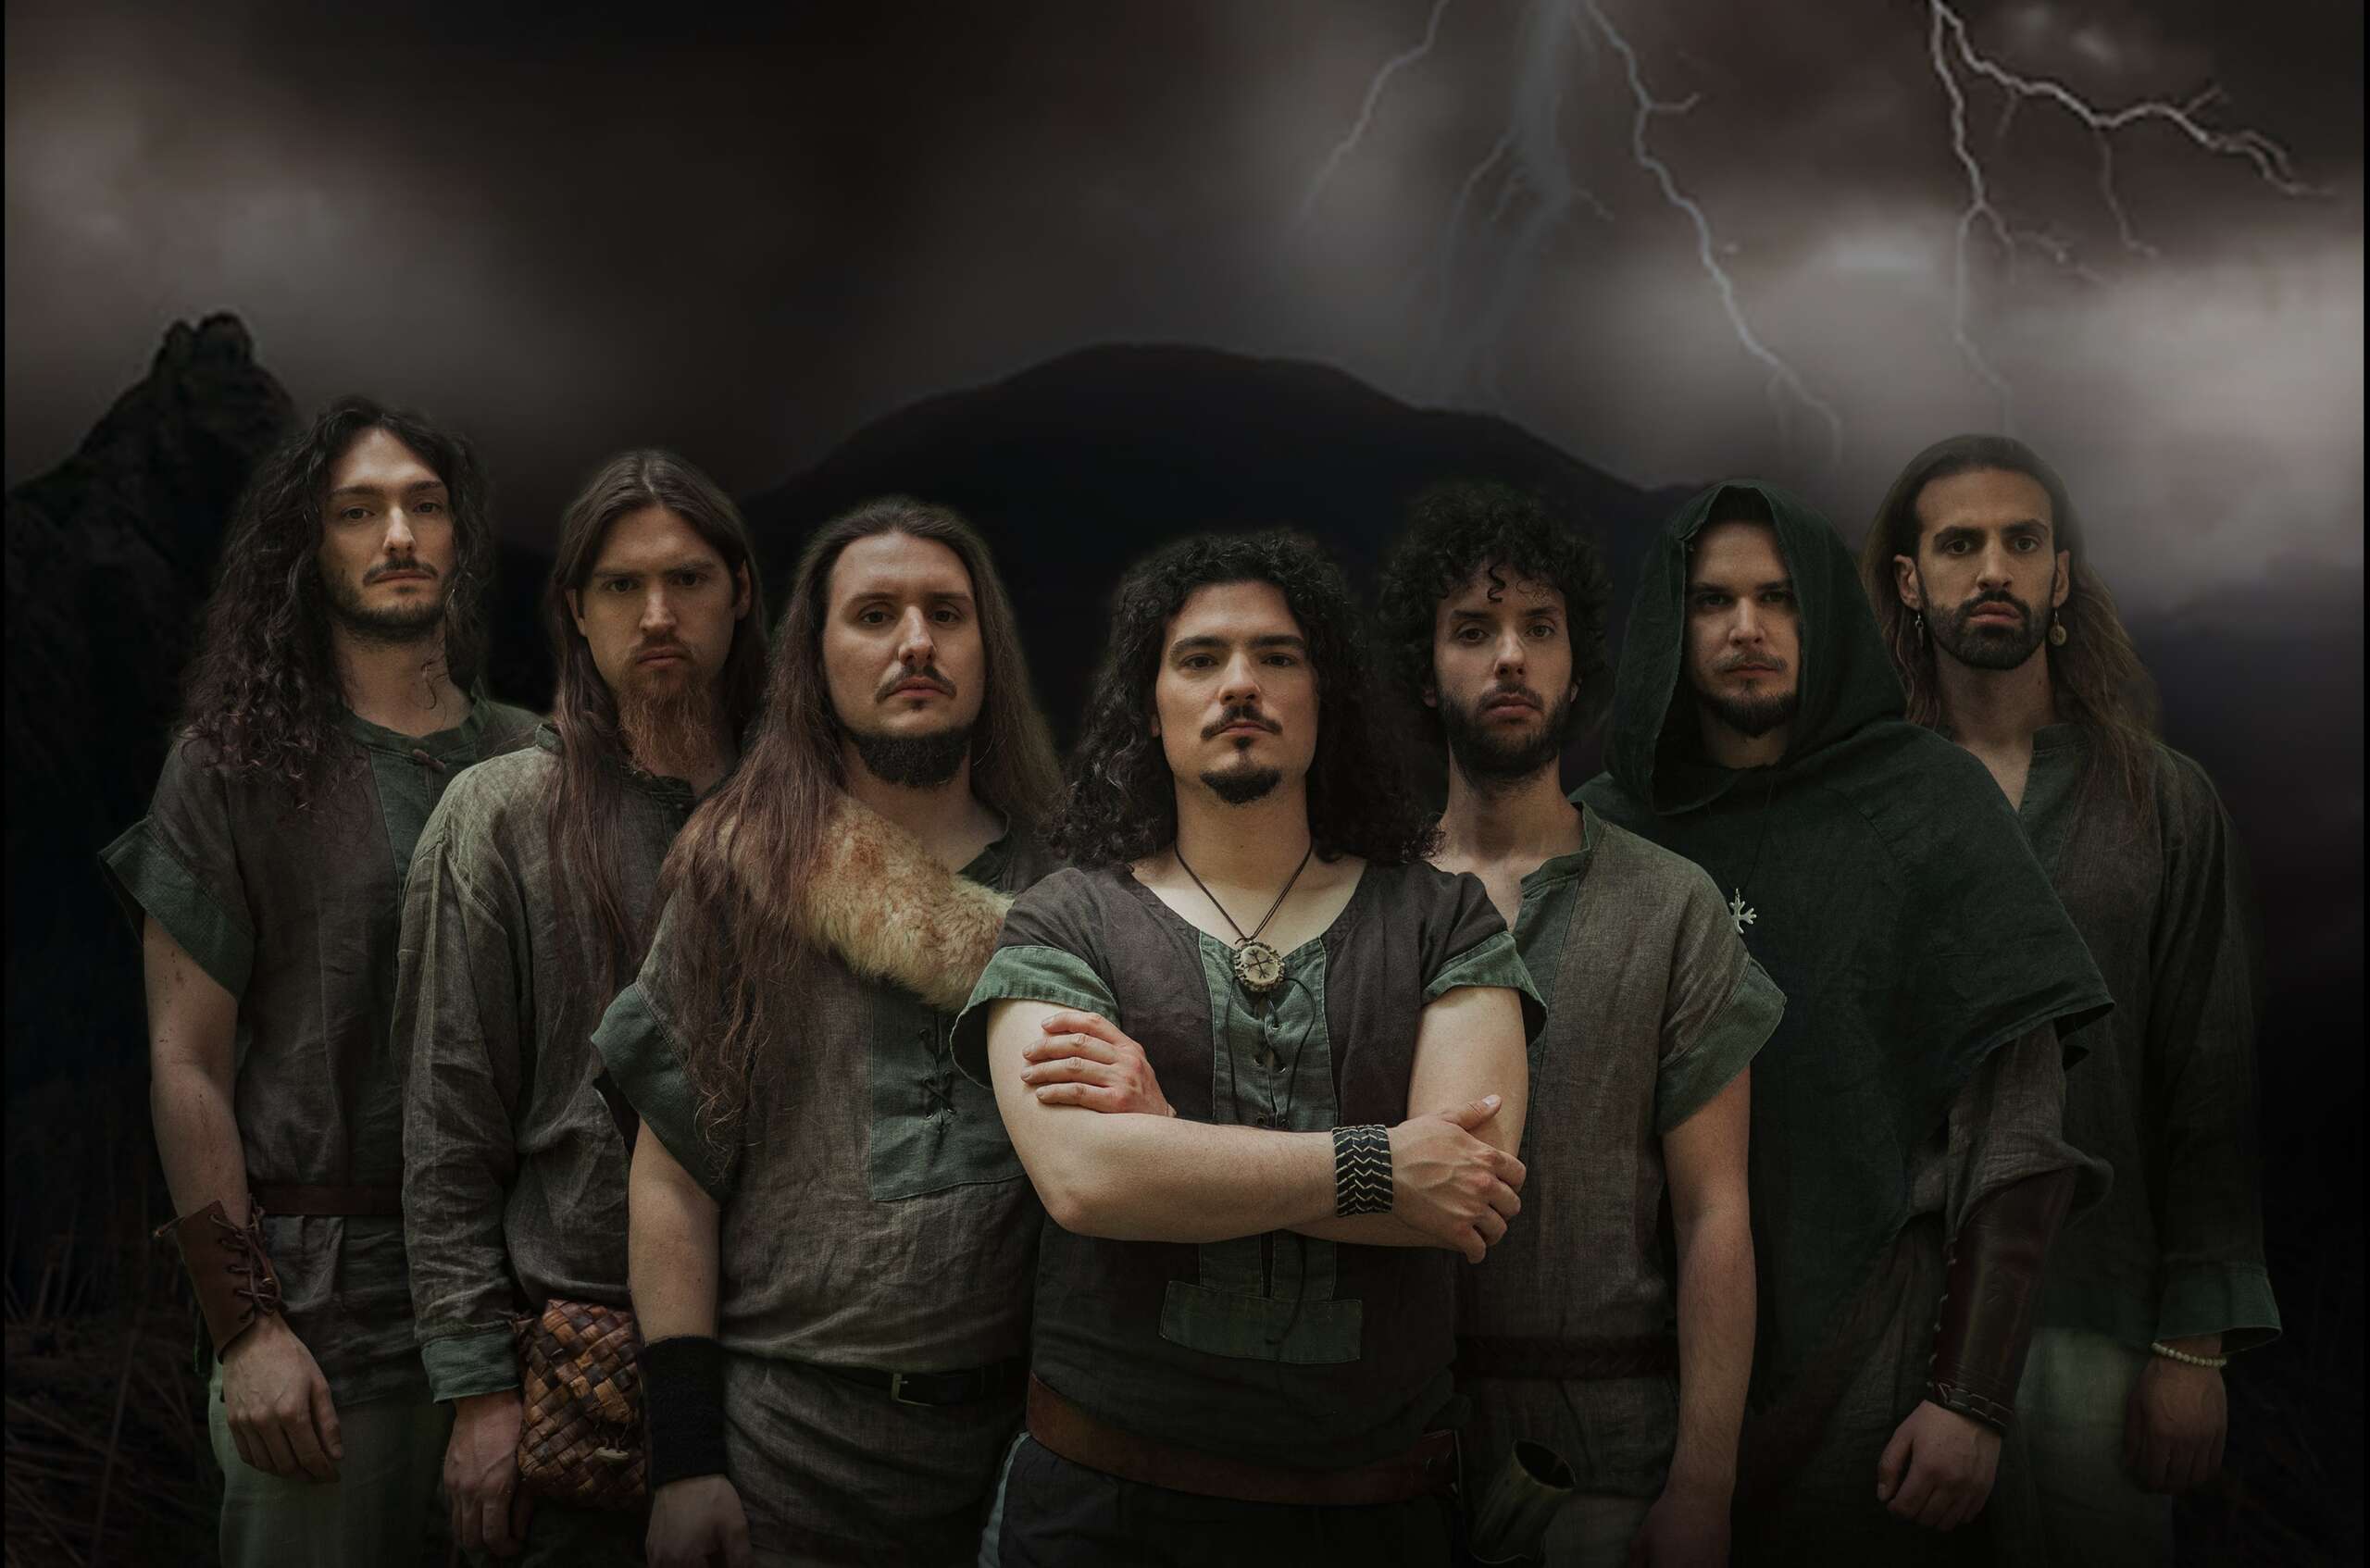 KANSEIL – fuori oggi “Antares”, il nuovo singolo della folk metal band da Treviso